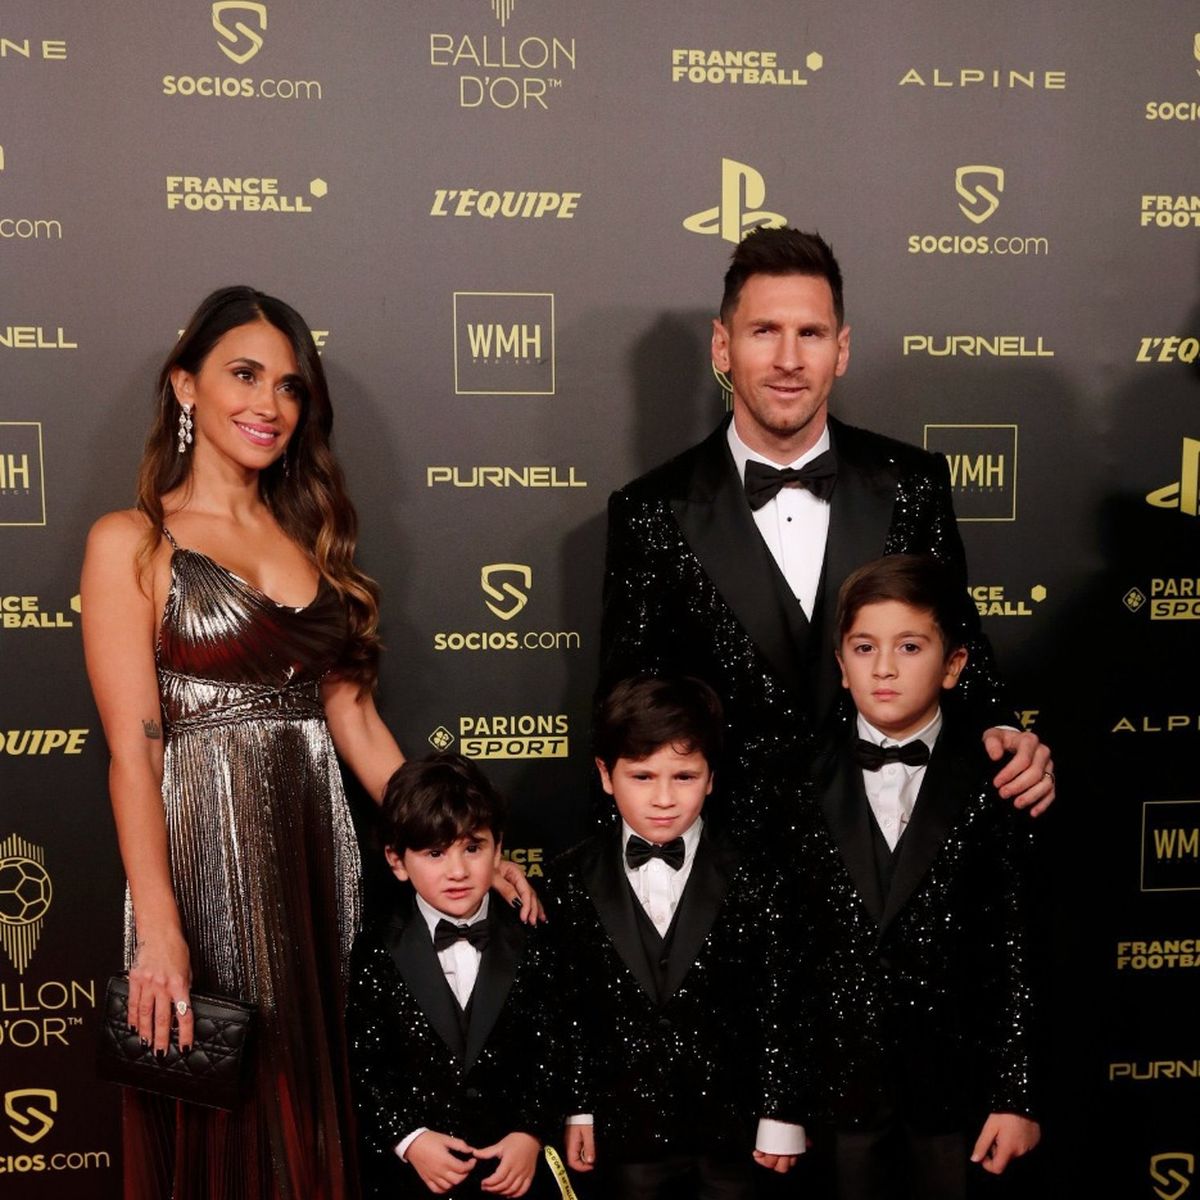 La gala del Balón de Oro: reviví la noche dorada de Lionel Messi